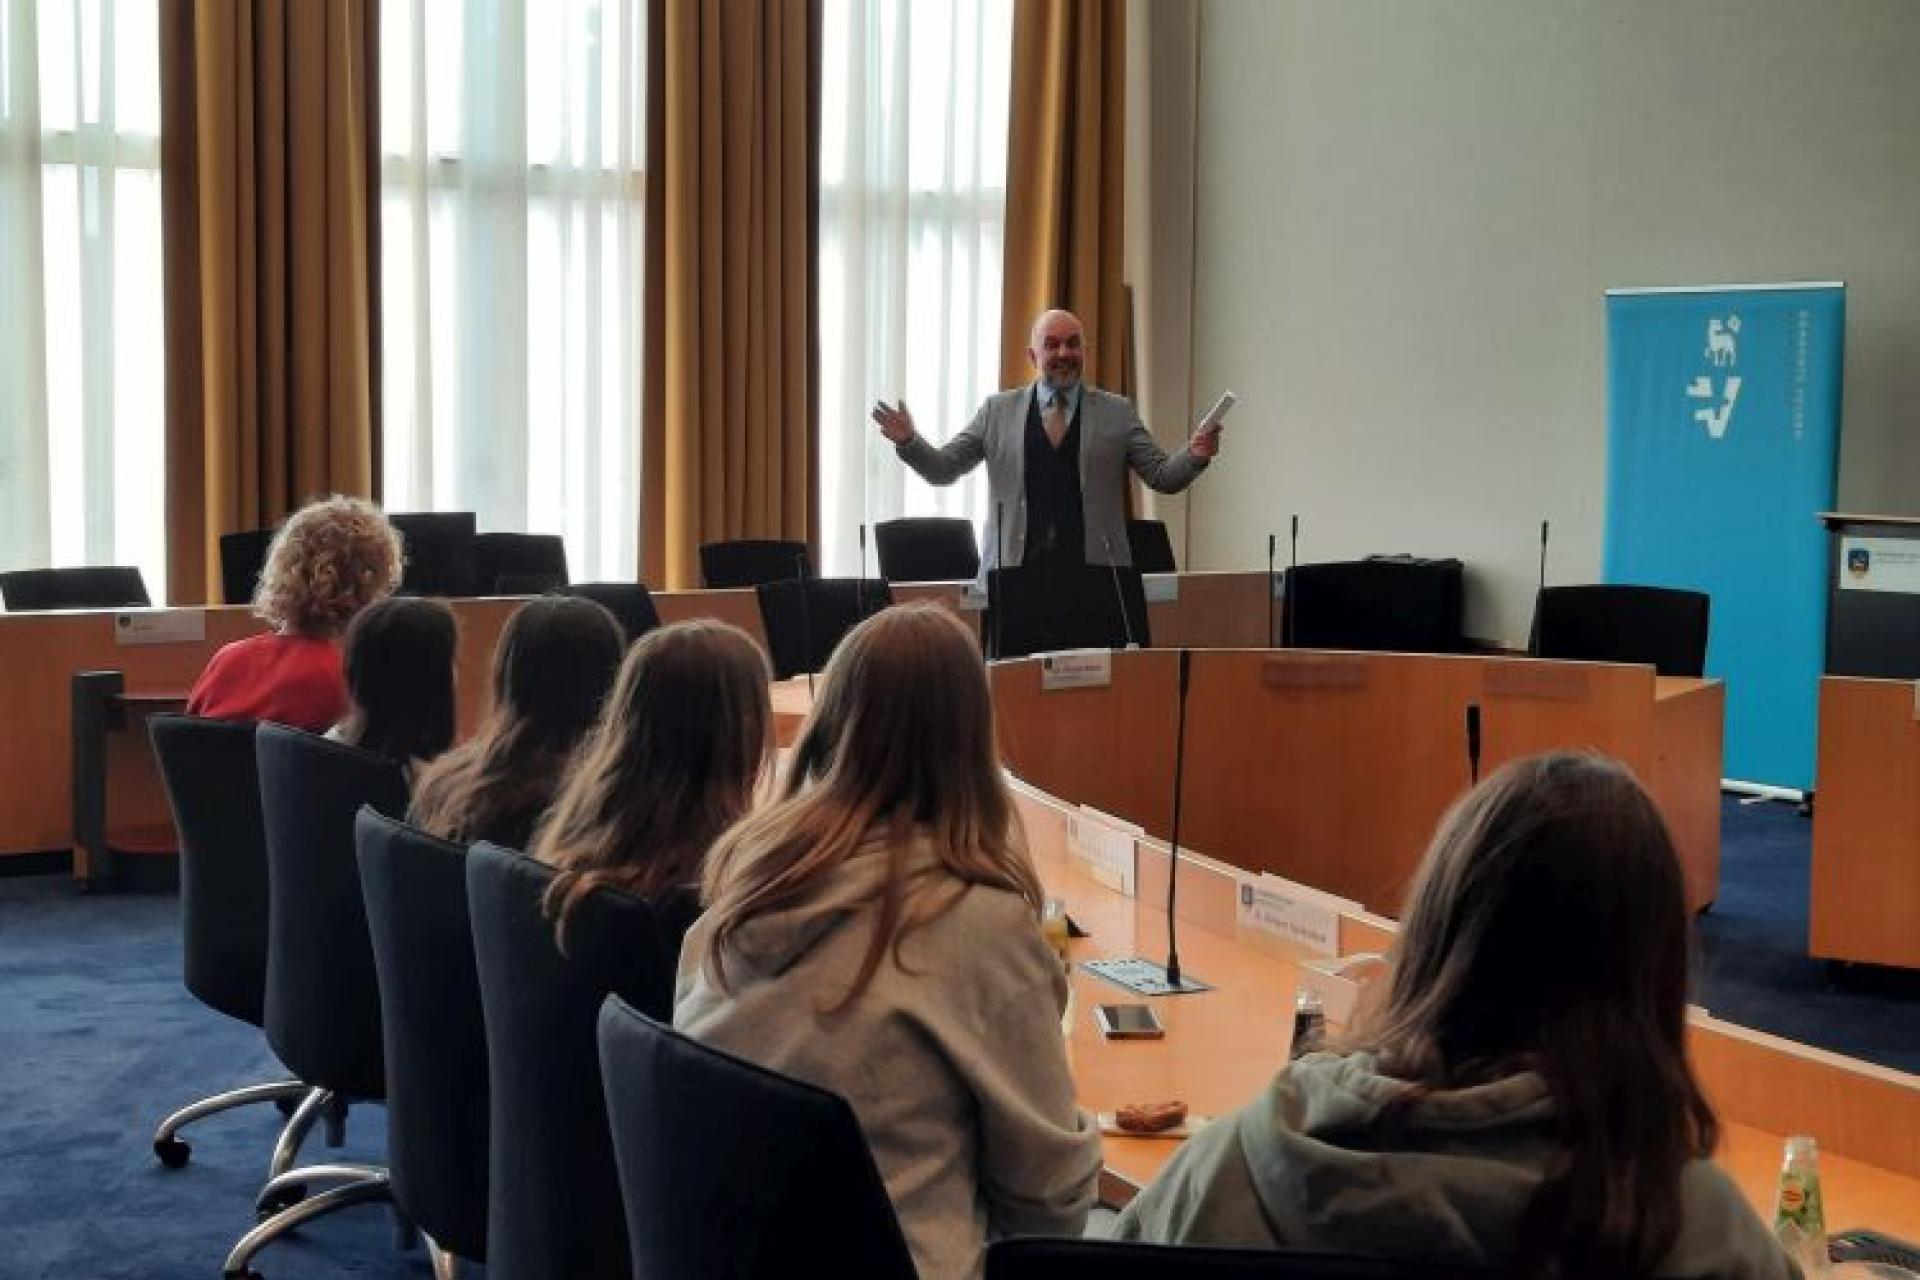 Leerlingen uit Bergisch Gladbach luisteren in de raadzaal naar een uitleg door Jeroen Verwoort